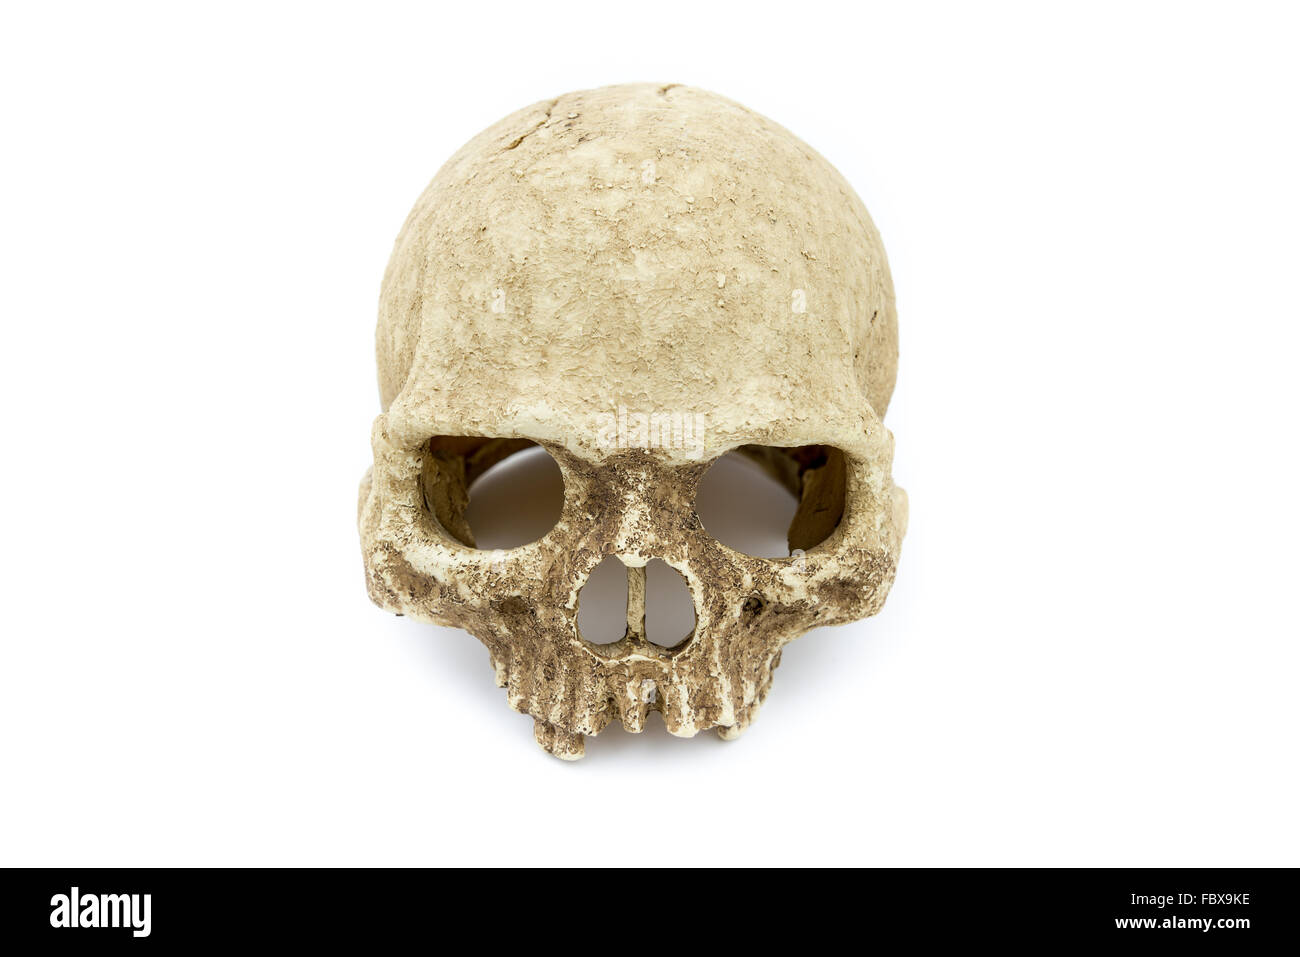 resin casting primate skull, human skull on isolate white background Stock Photo